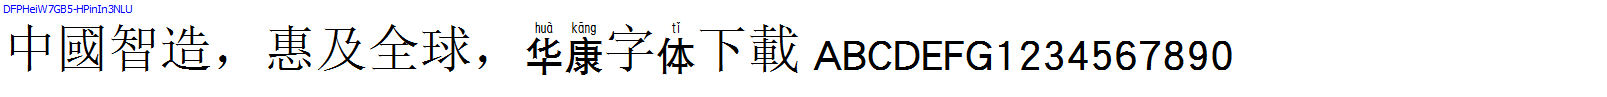 華康字體DFPHeiW7GB5-HPinIn3NLU.TTF